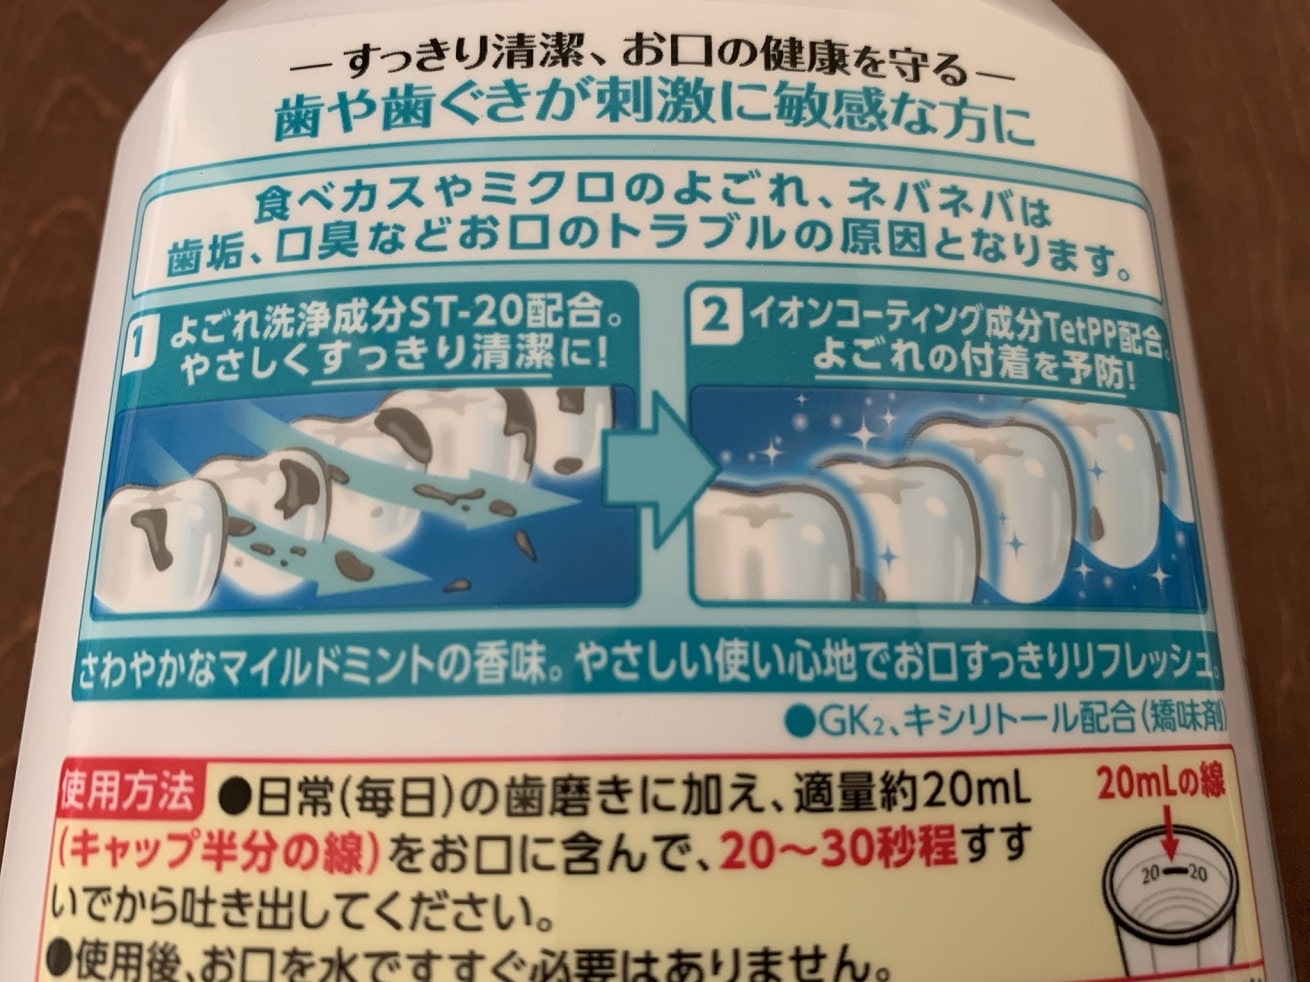 洗口液モンダミンの使用方法